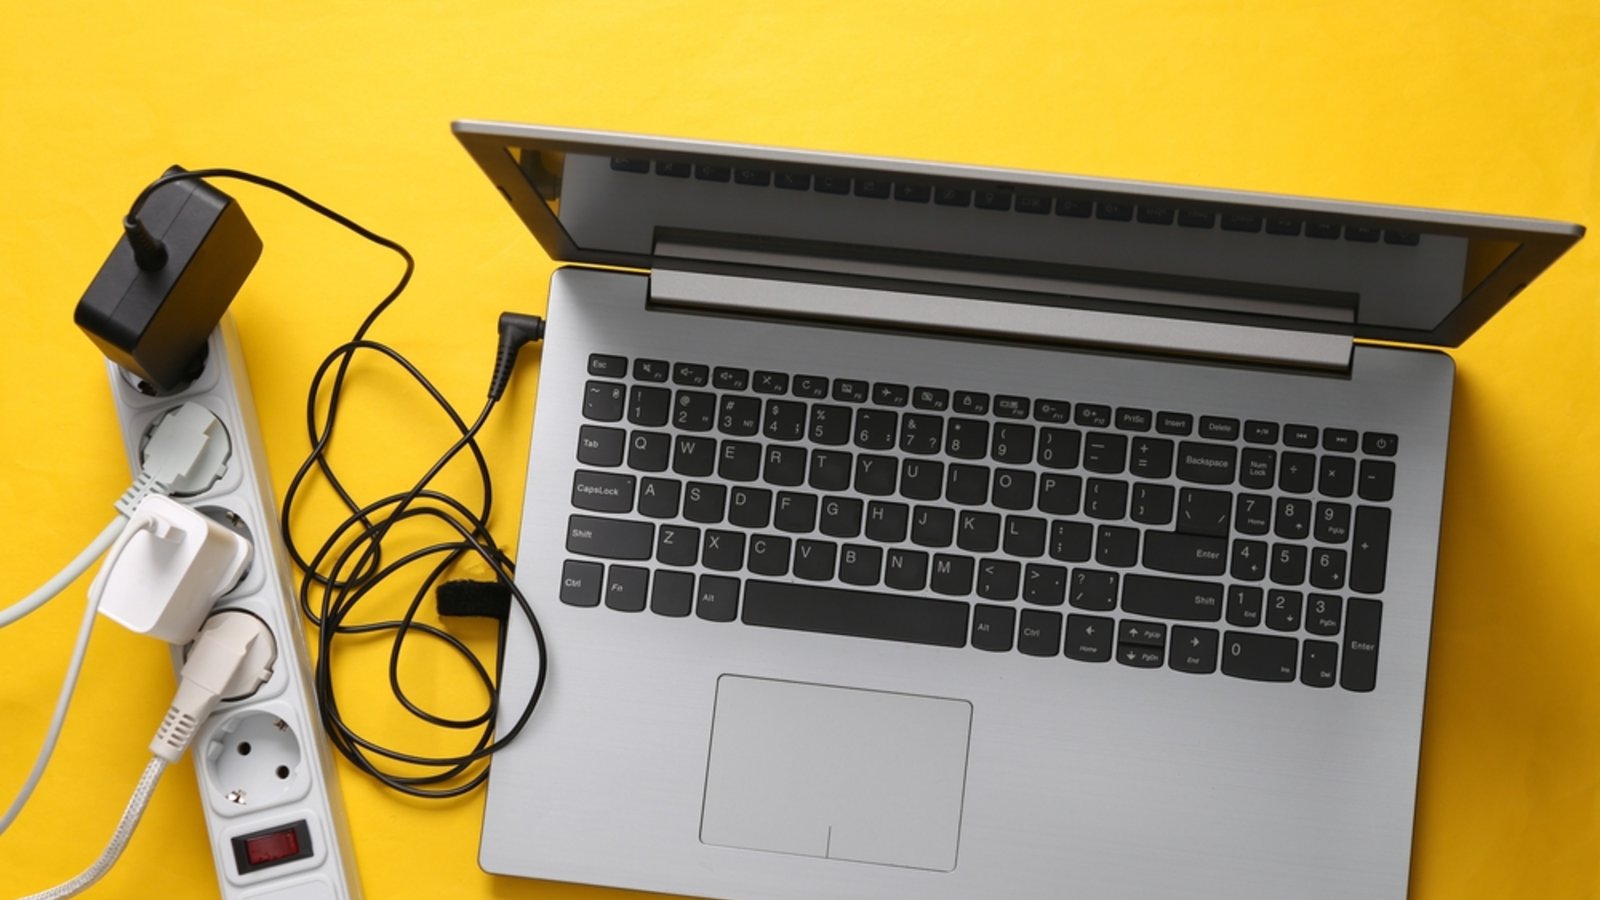 Der Stromverbrauch eines Laptops lässt sich leicht berechnen.Foto: Vladimir Sukhachev / shutterstock.com